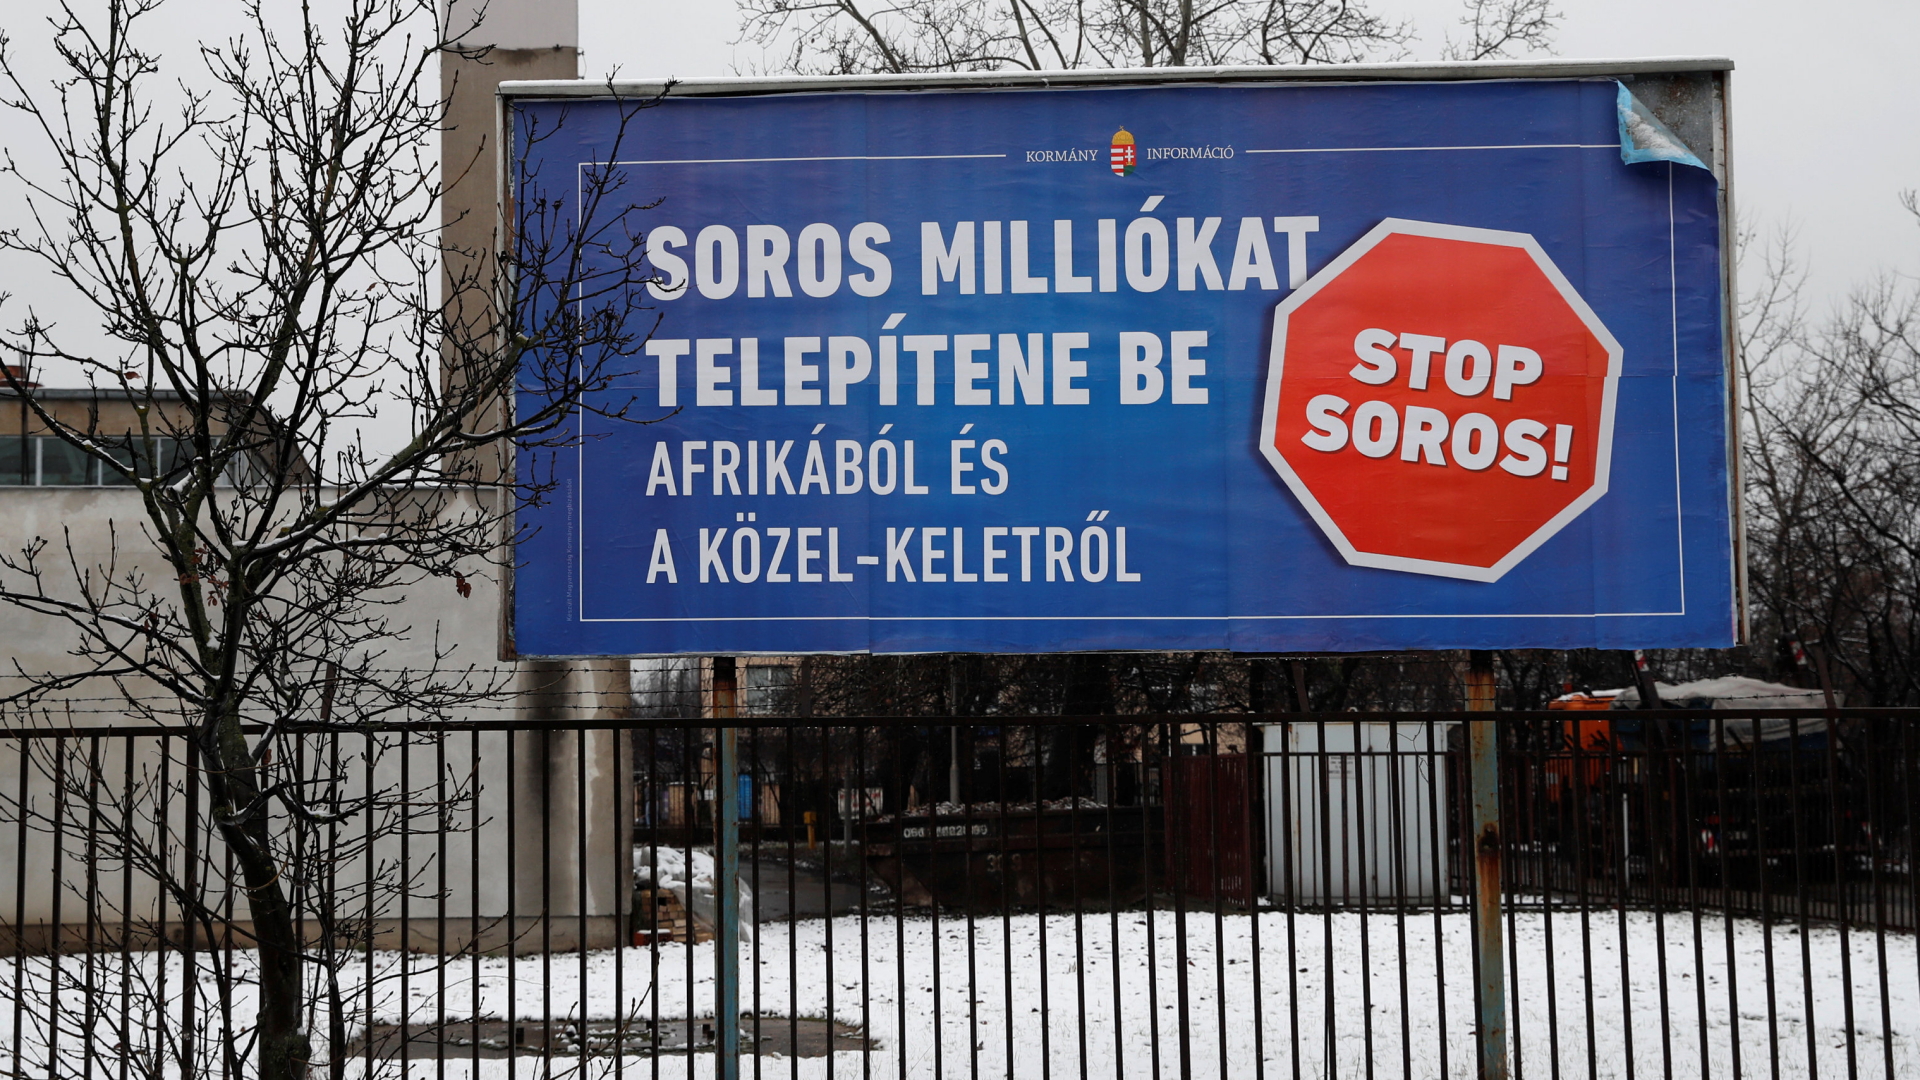 STop-Soros-Plakat: Soros will Millionen aus Afrika und dem Nahen Osten holen | REUTERS